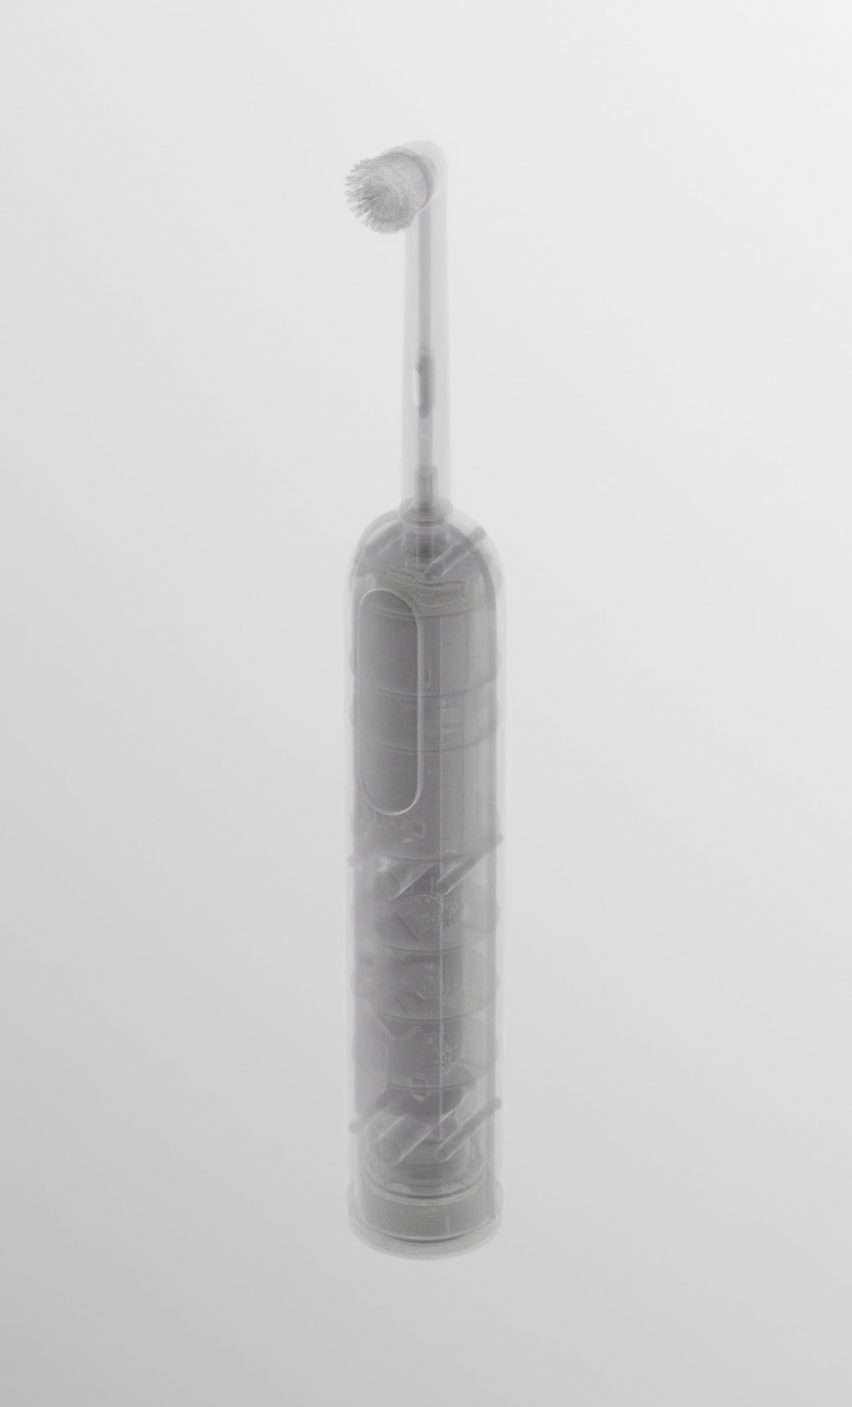 Рендеринг зубной щетки на белом фоне из концепции Сеймура Пауэлла Un-Made.